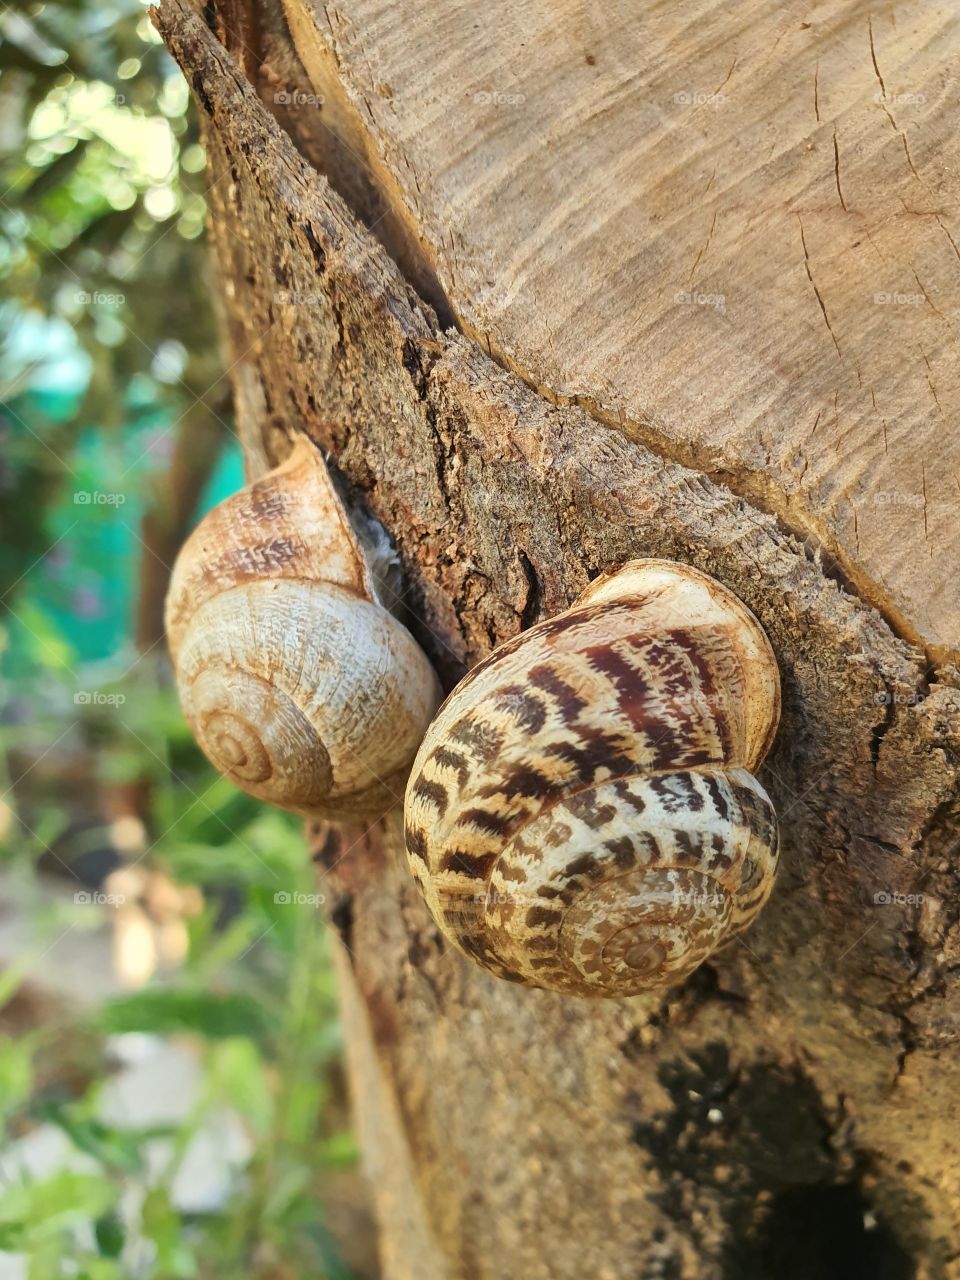 Snails!